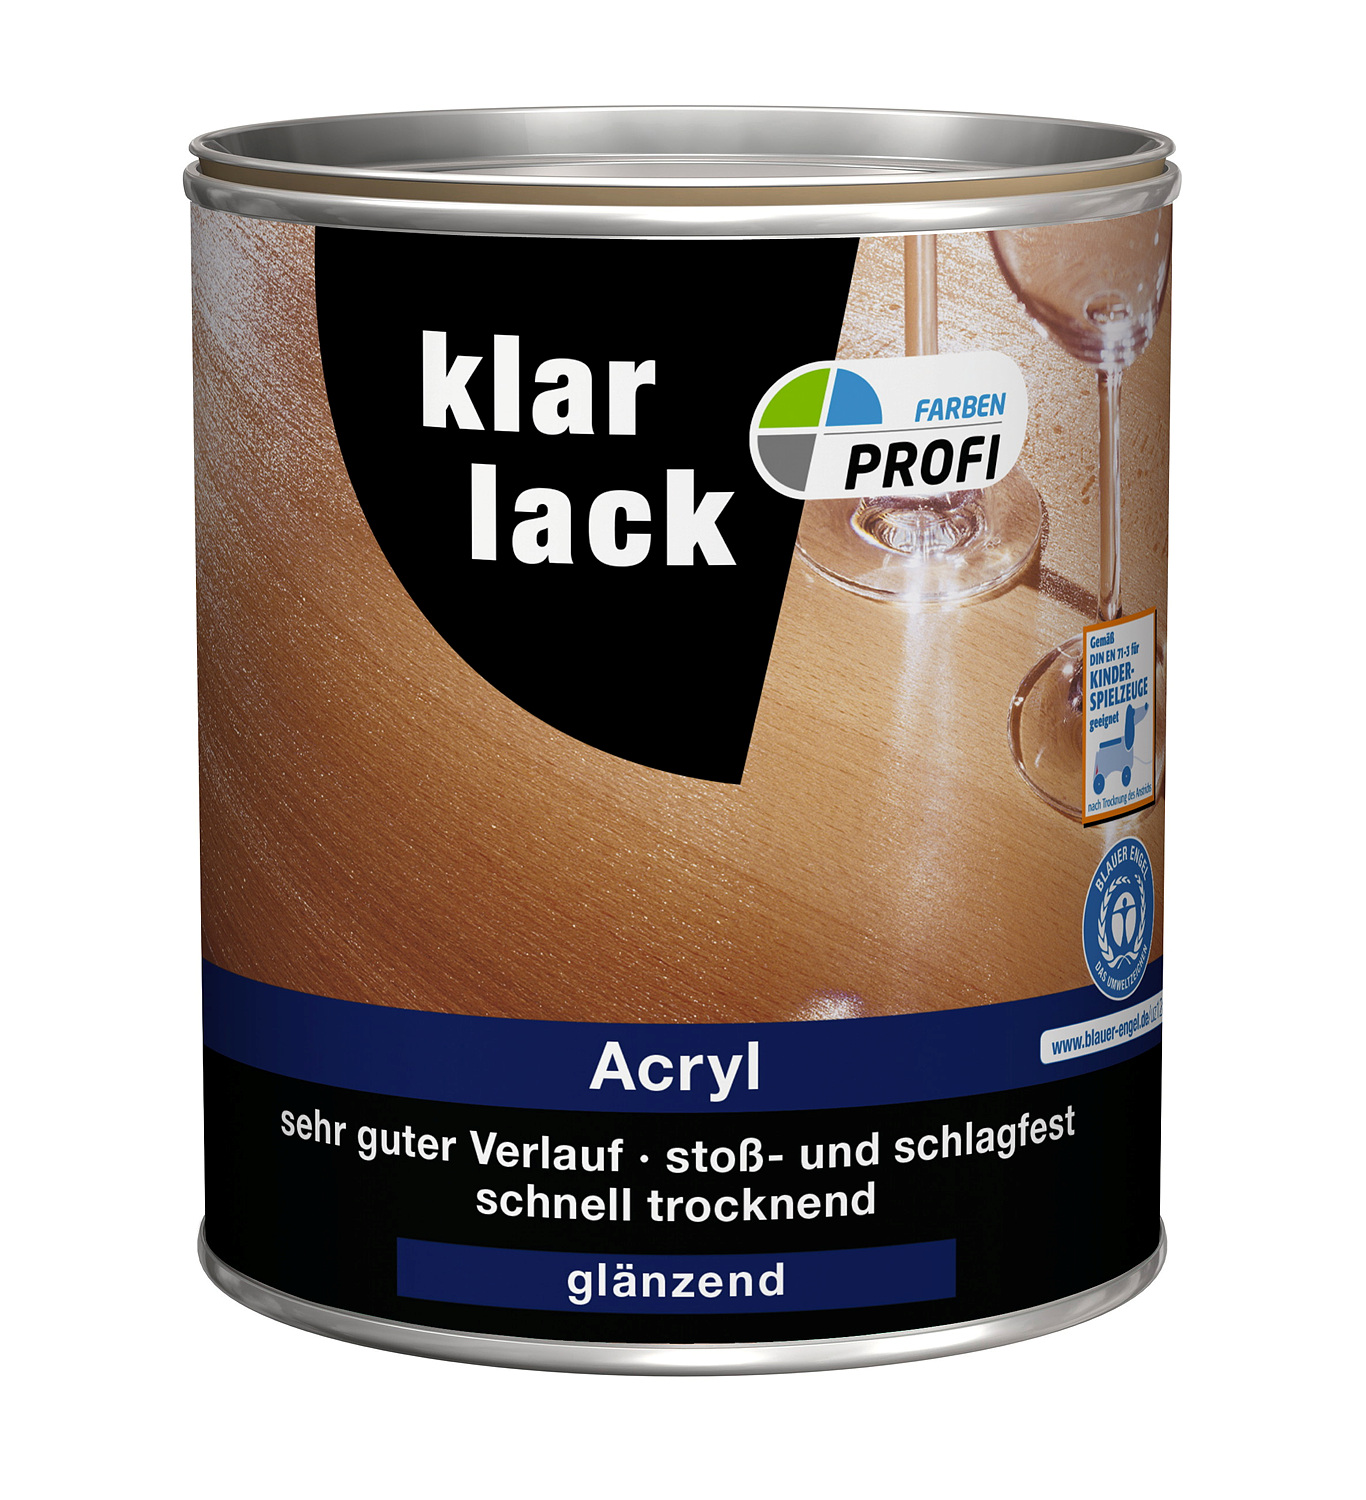 PROFI Acryl Klarlack 125 ml, glänzend